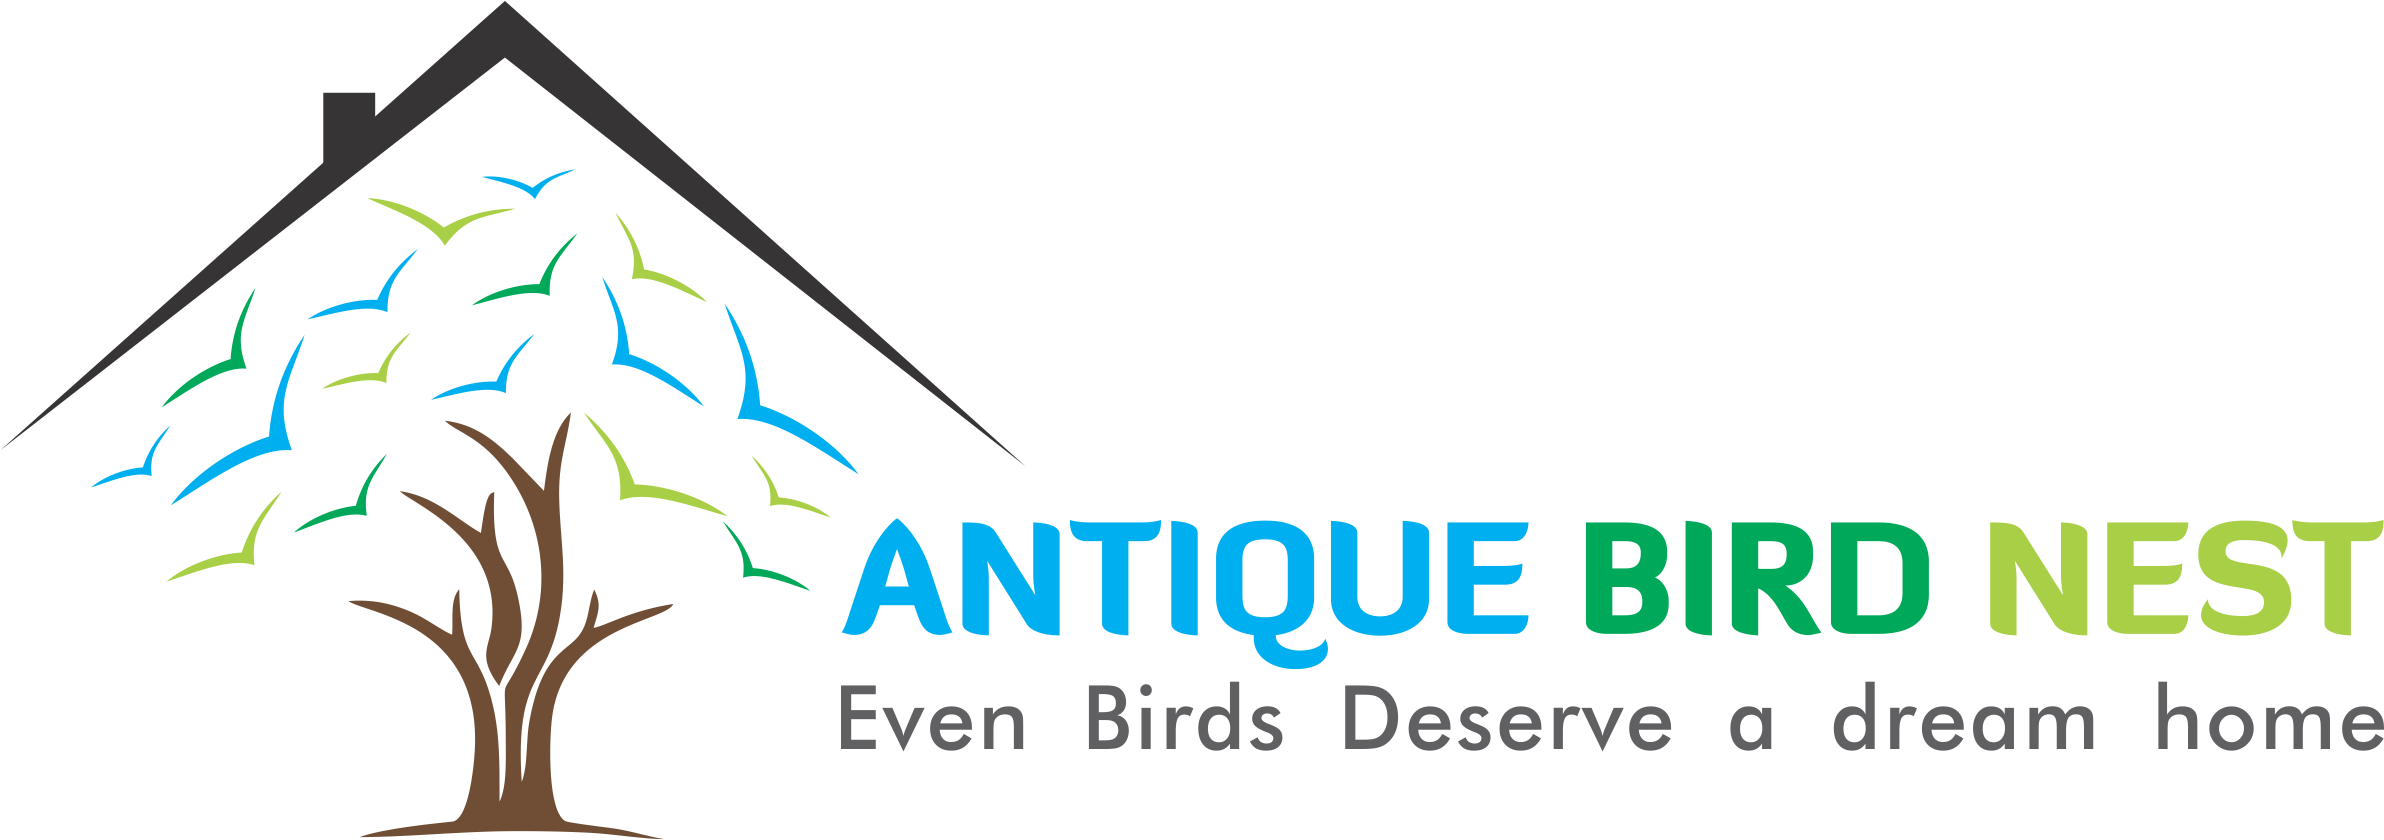 Antique Bird Nest Store - Bubble Letters (2384x840), Png Download